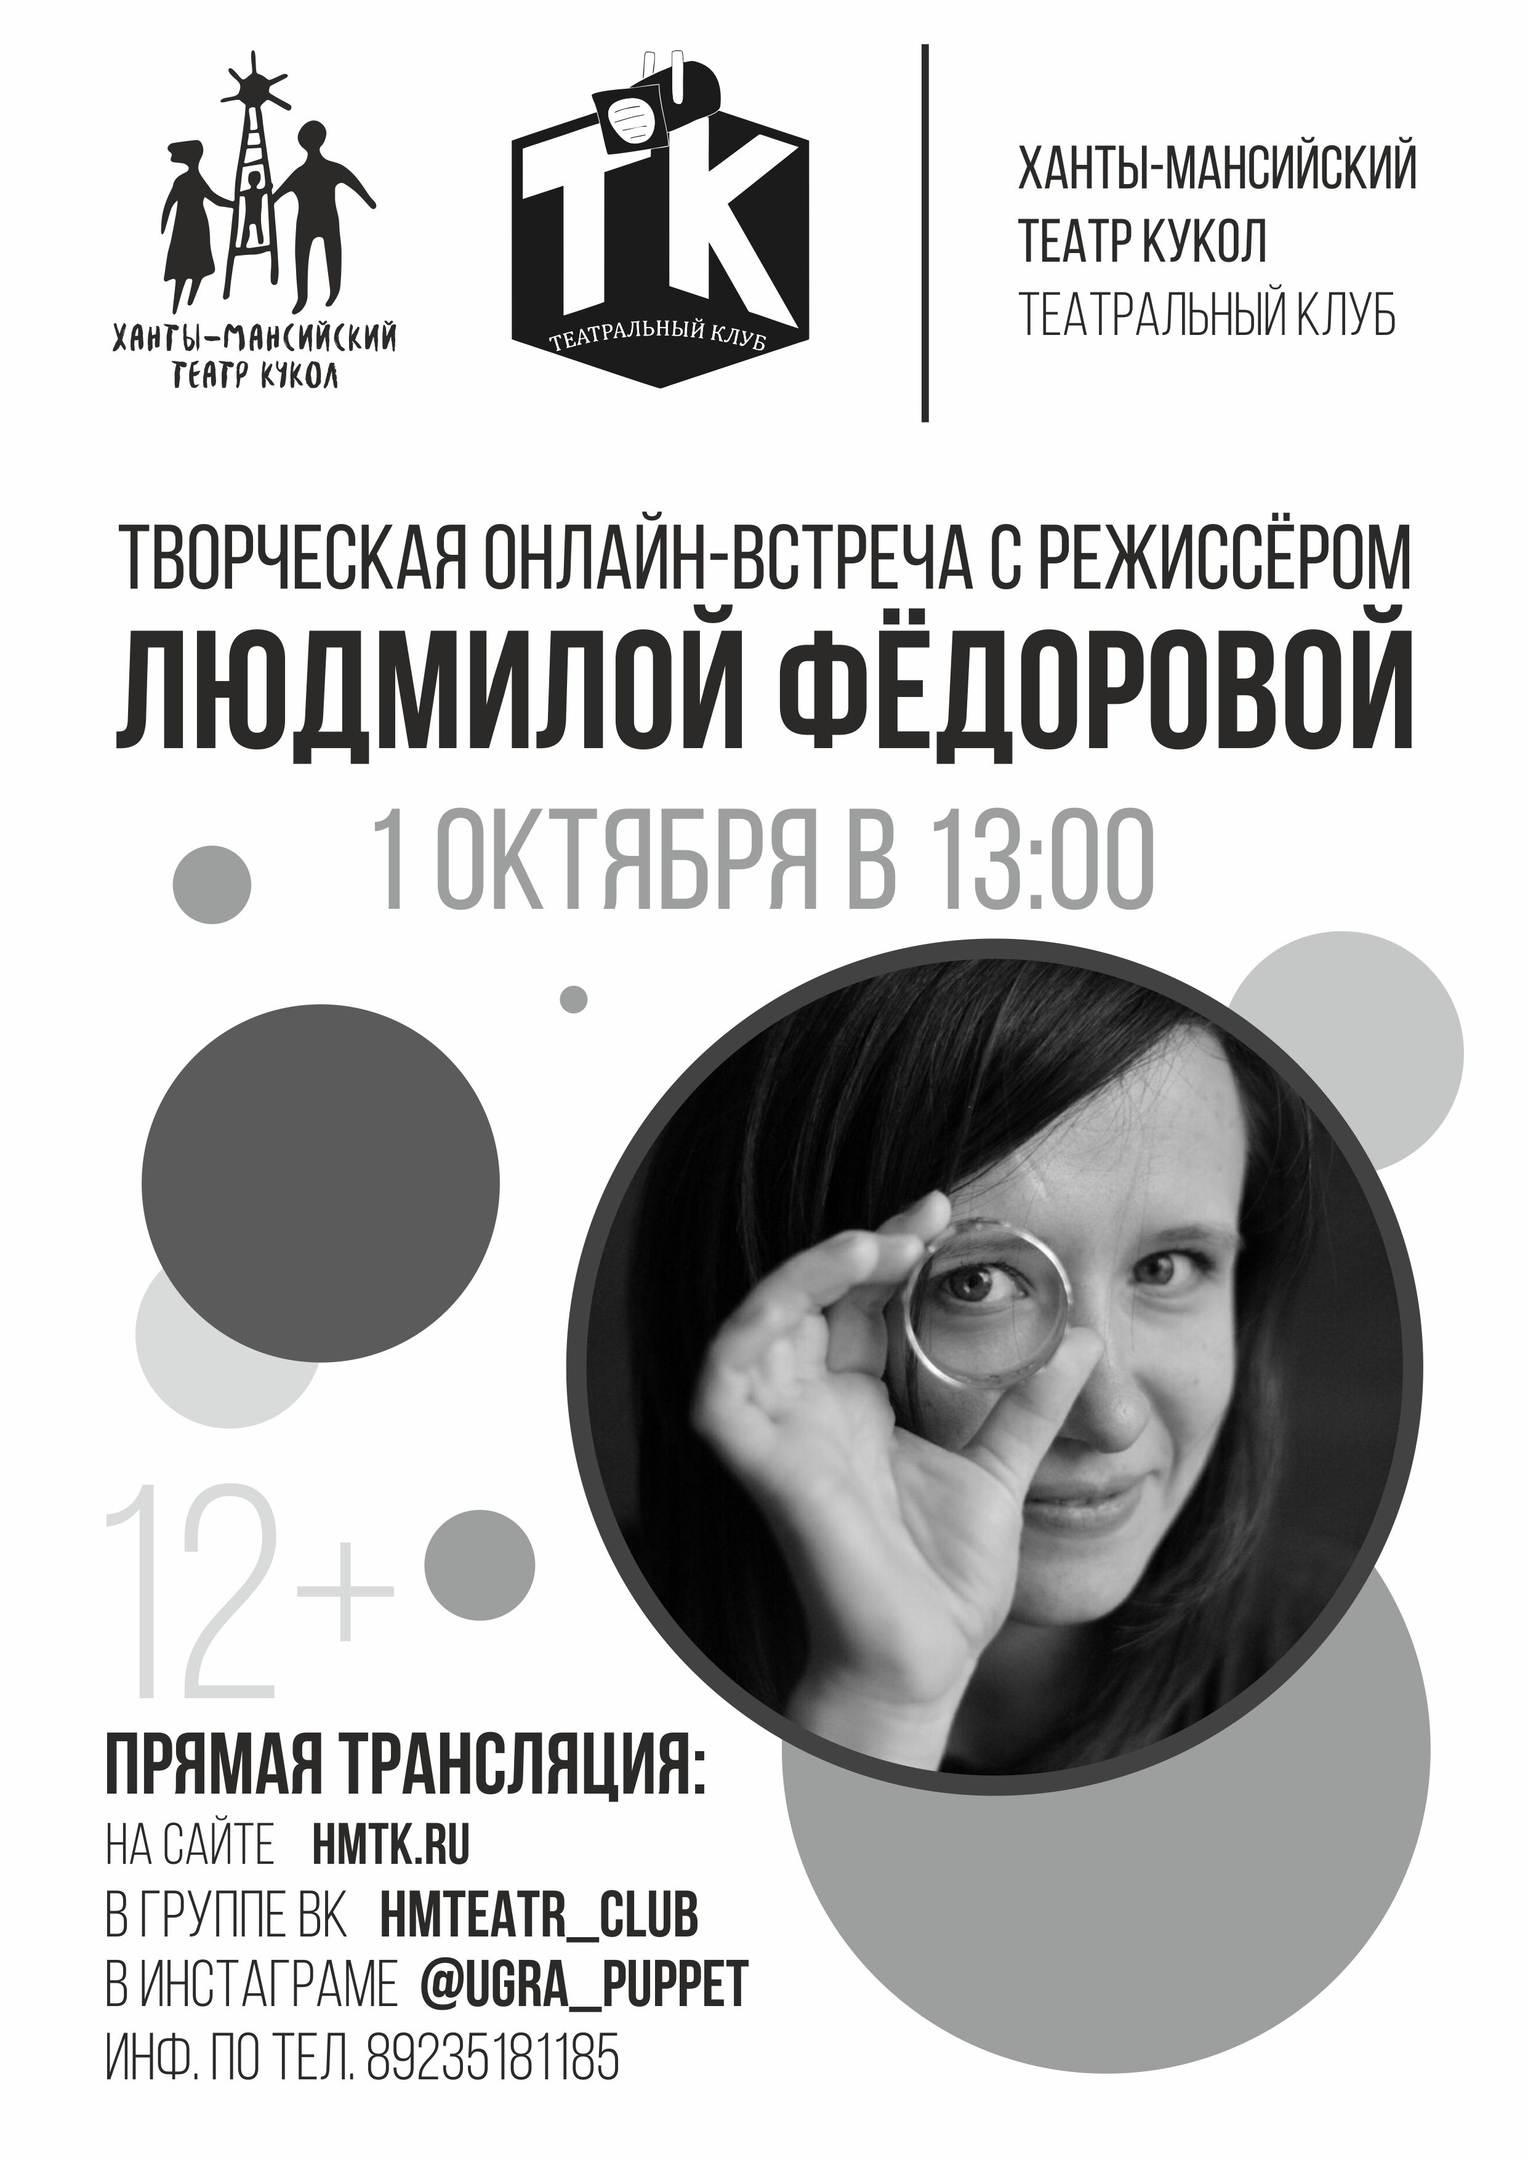 Онлайн-встреча с режиссёром Людмилой Фёдоровой состоится в Ханты-Мансийском театре кукол